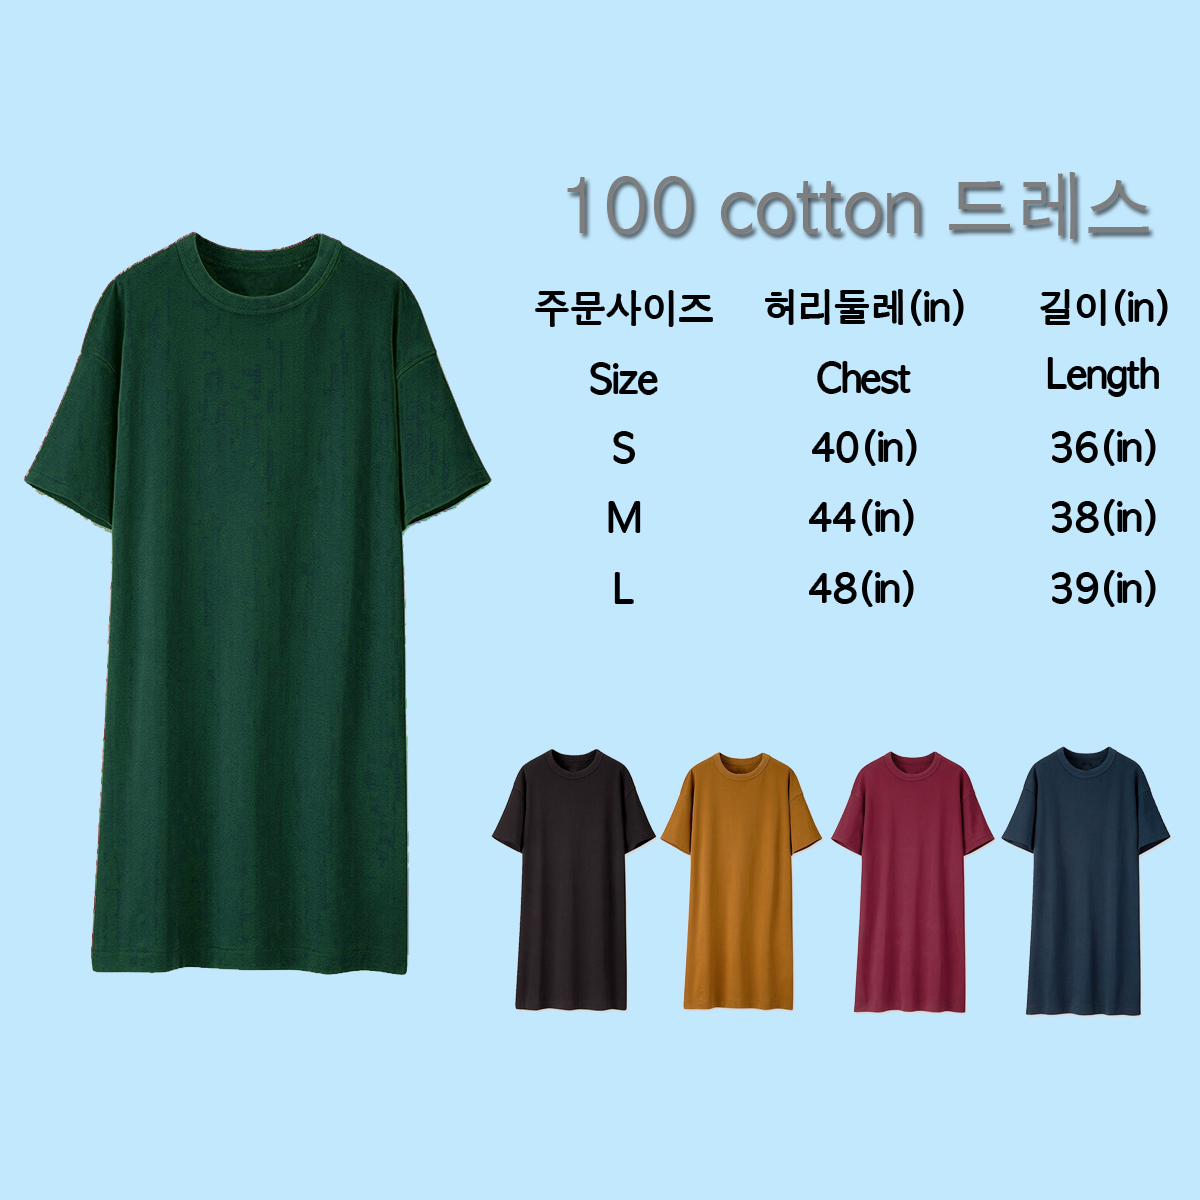 พร้อมส่ง ชุดDress สไตล์เกาหลี ใสๆทรงน่ารัก Cotton100% เกรดพรีเมี่ยมเกาหลี ราคาถูกๆ มีเก็บเงินปลายทาง